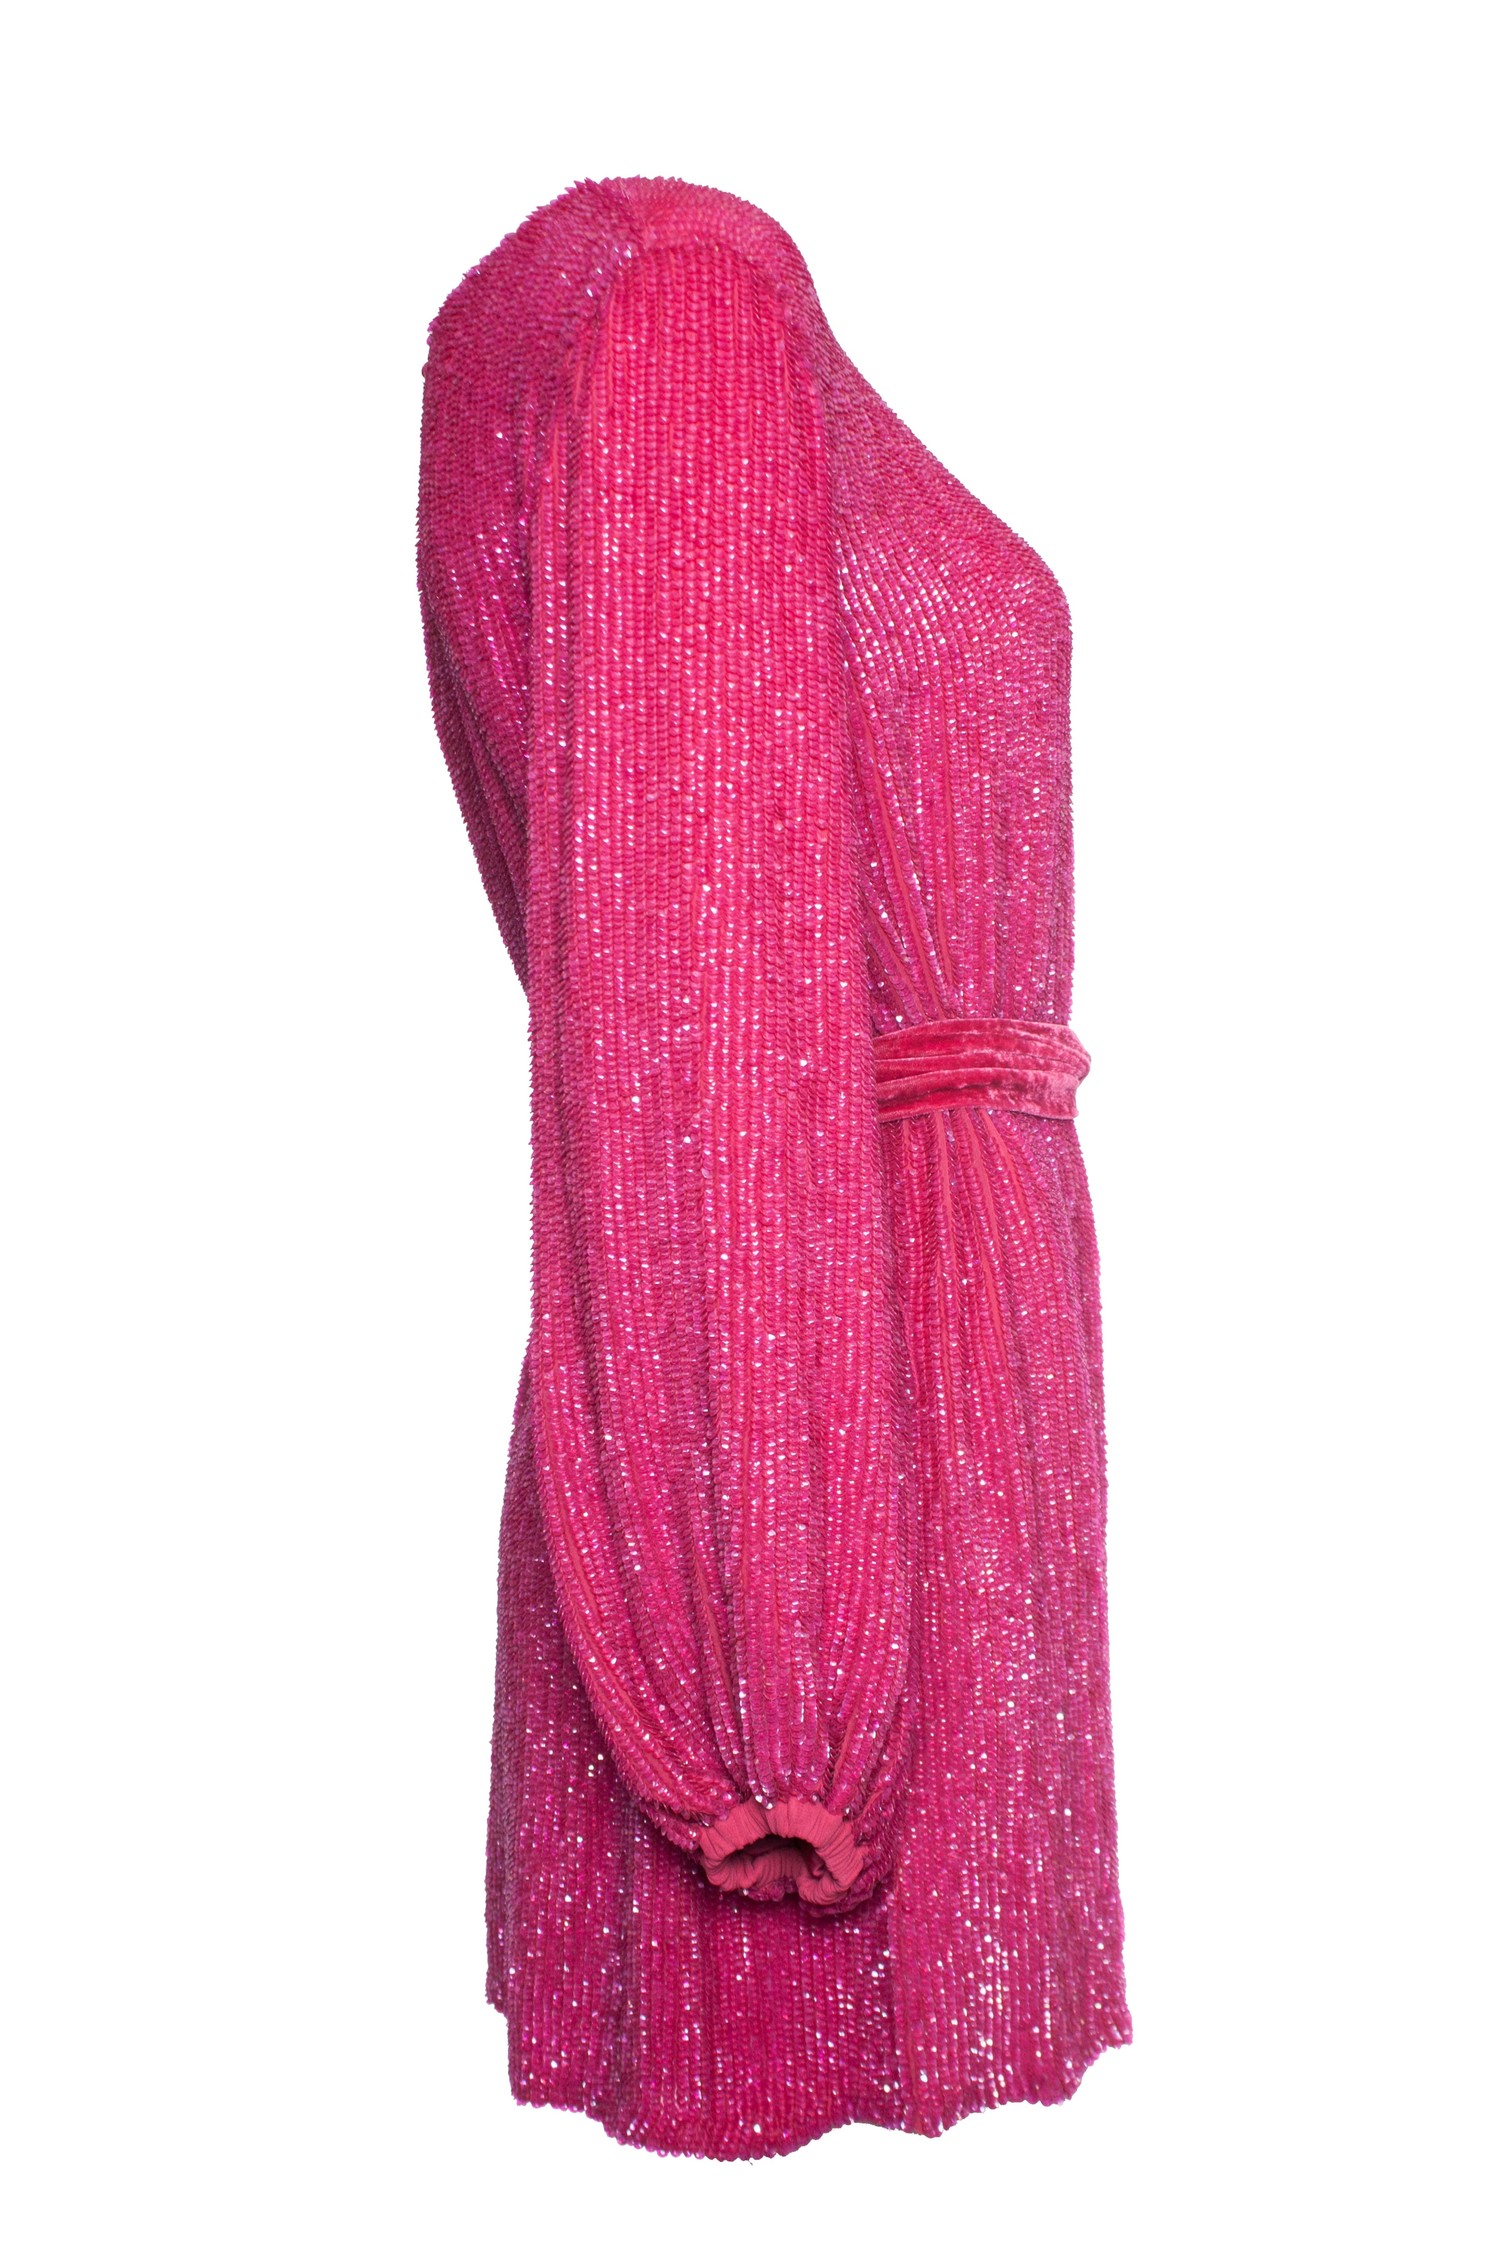 Retrofete, Pink Grace dress - Unique Designer Pieces